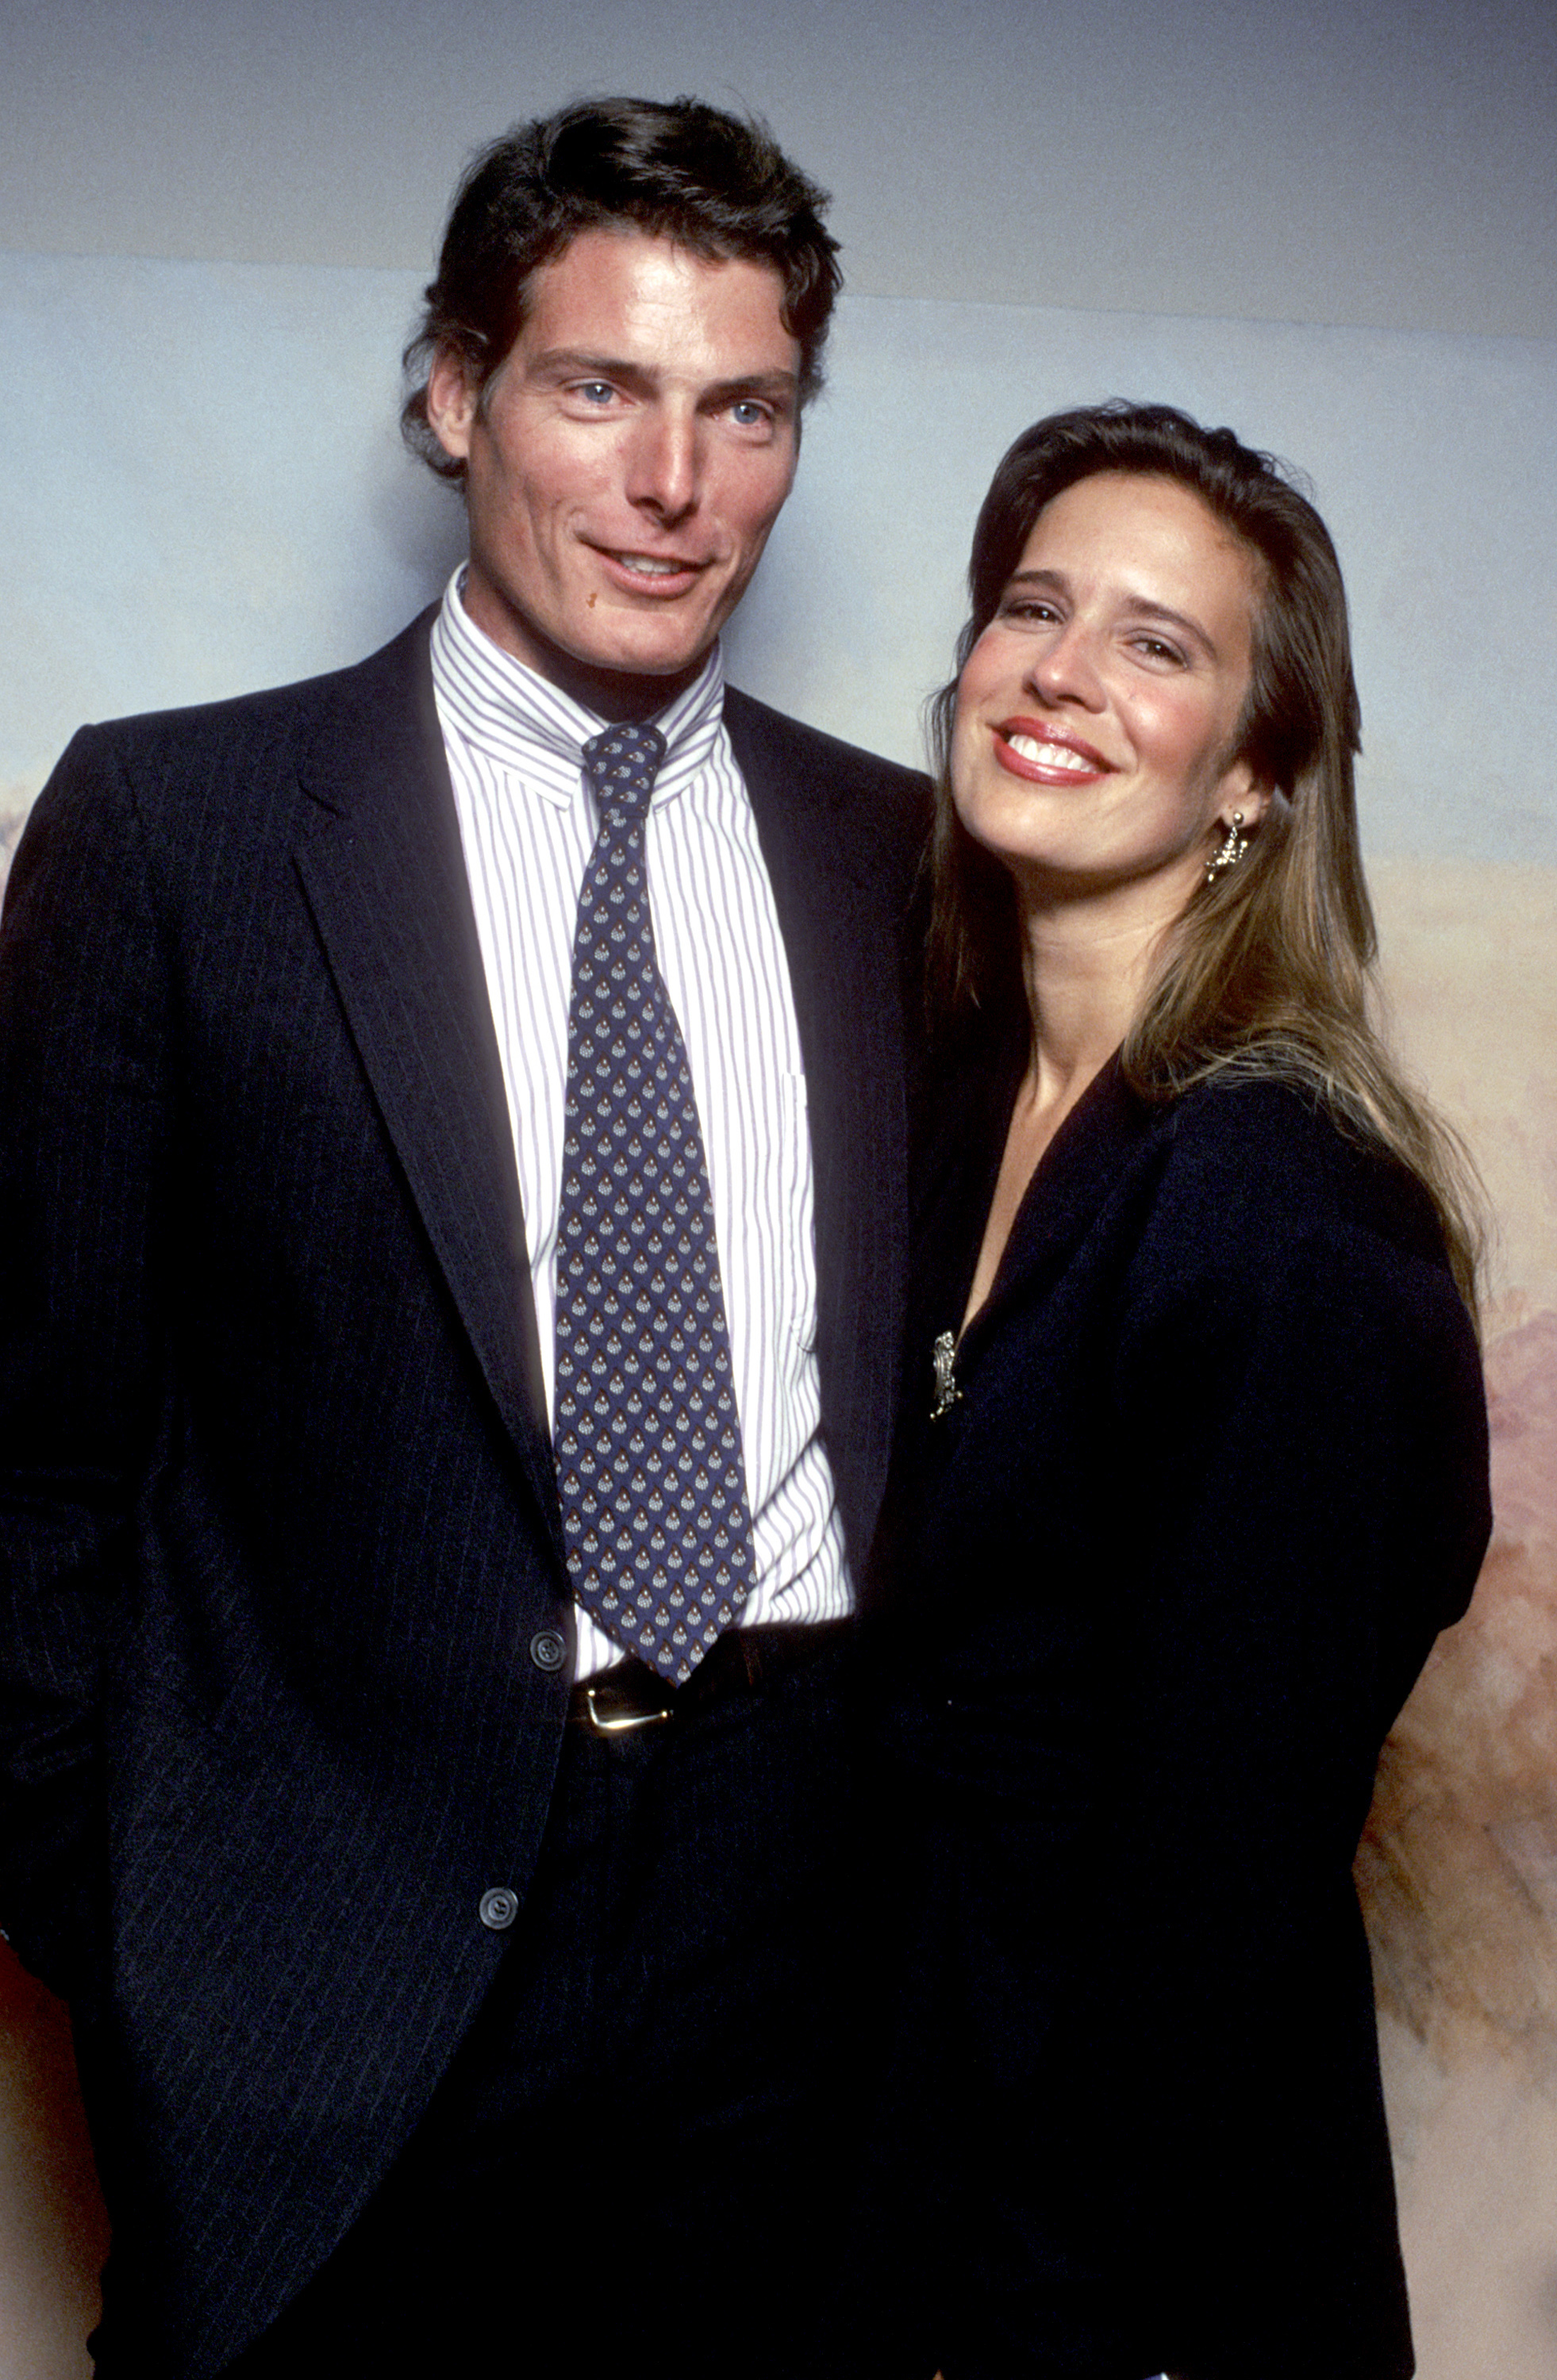 Christopher et Dana Reeve à l'ouverture de la pièce "Orpheus Descending" à New York en 1989 | Source : Getty Images